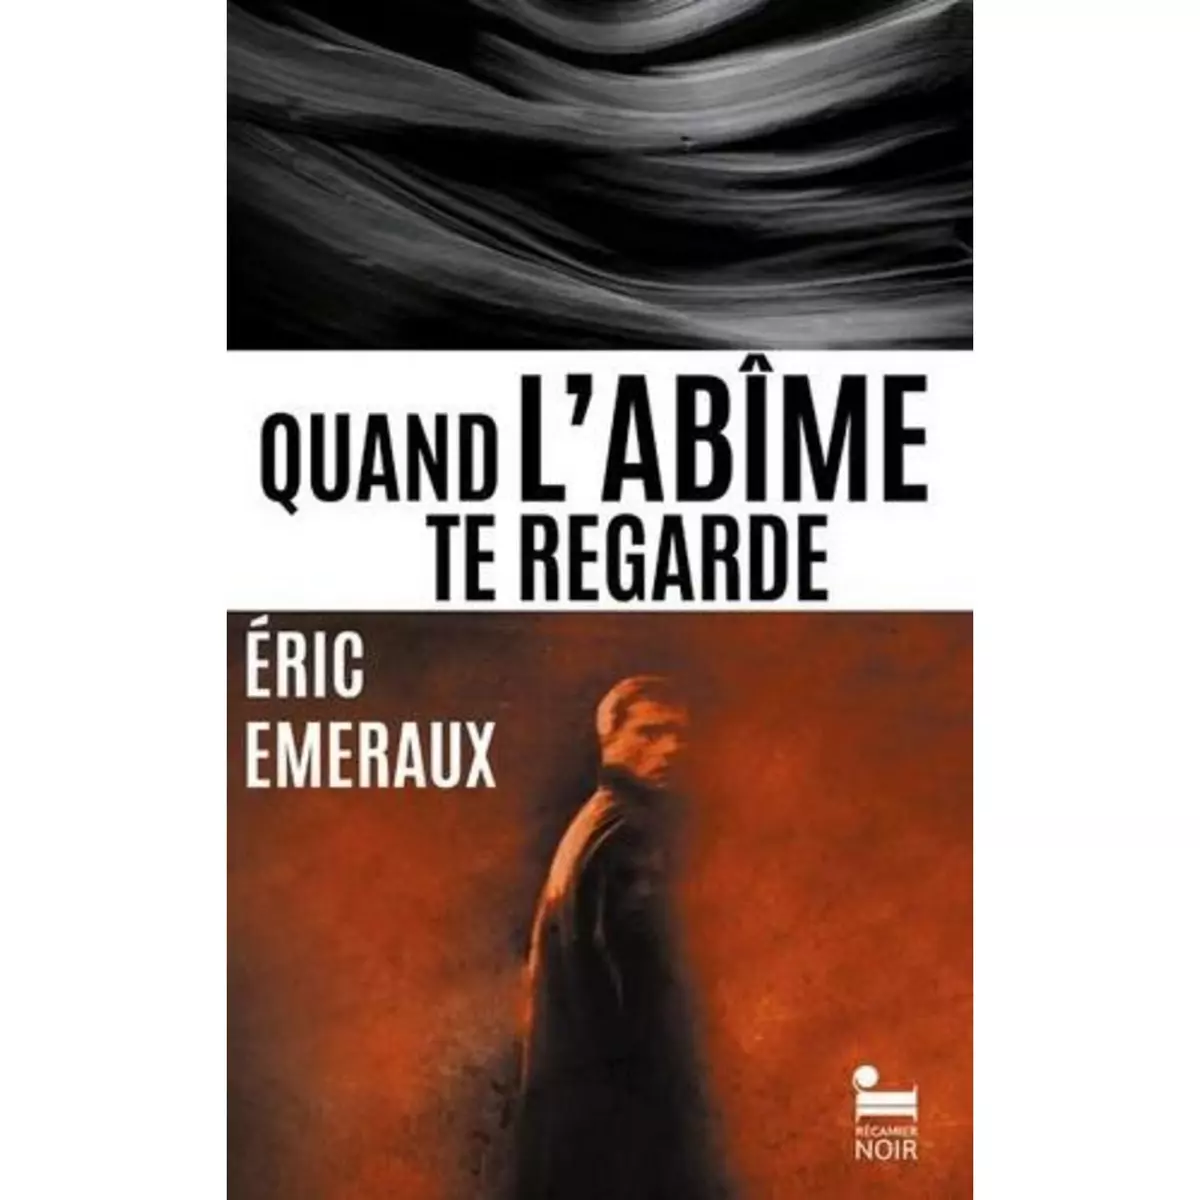  QUAND L'ABIME TE REGARDE, Emeraux Eric